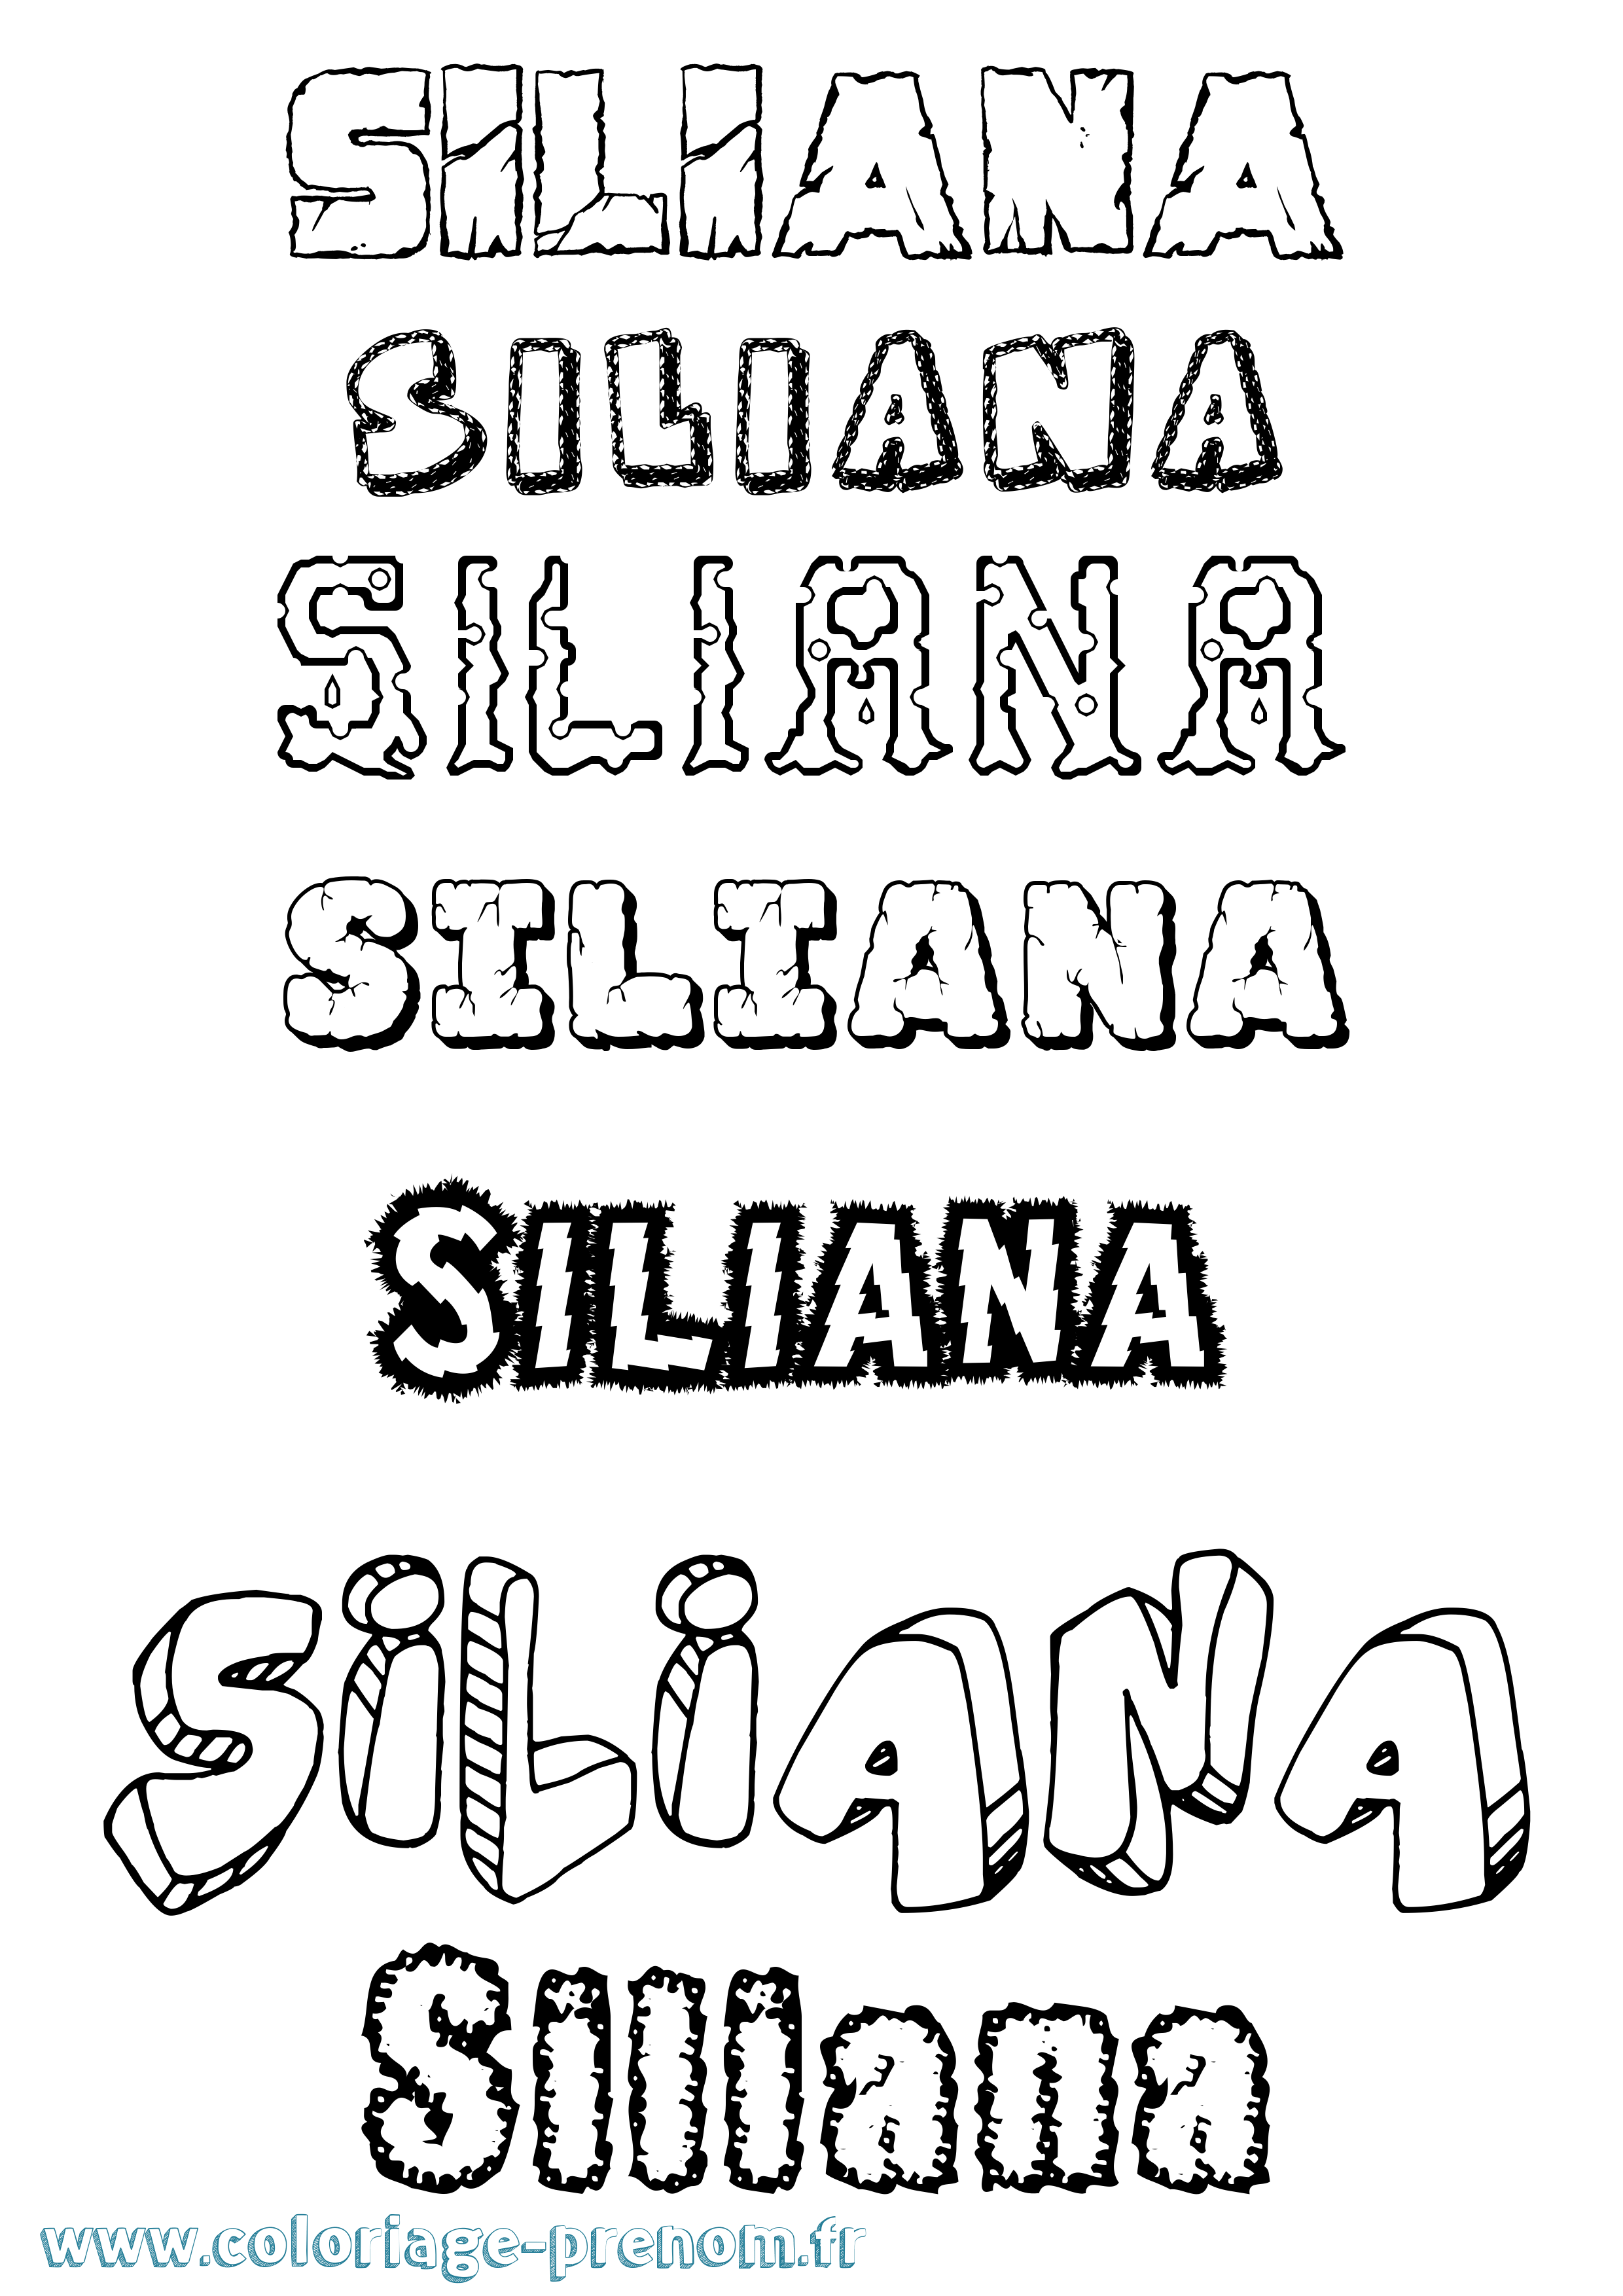 Coloriage prénom Siliana Destructuré